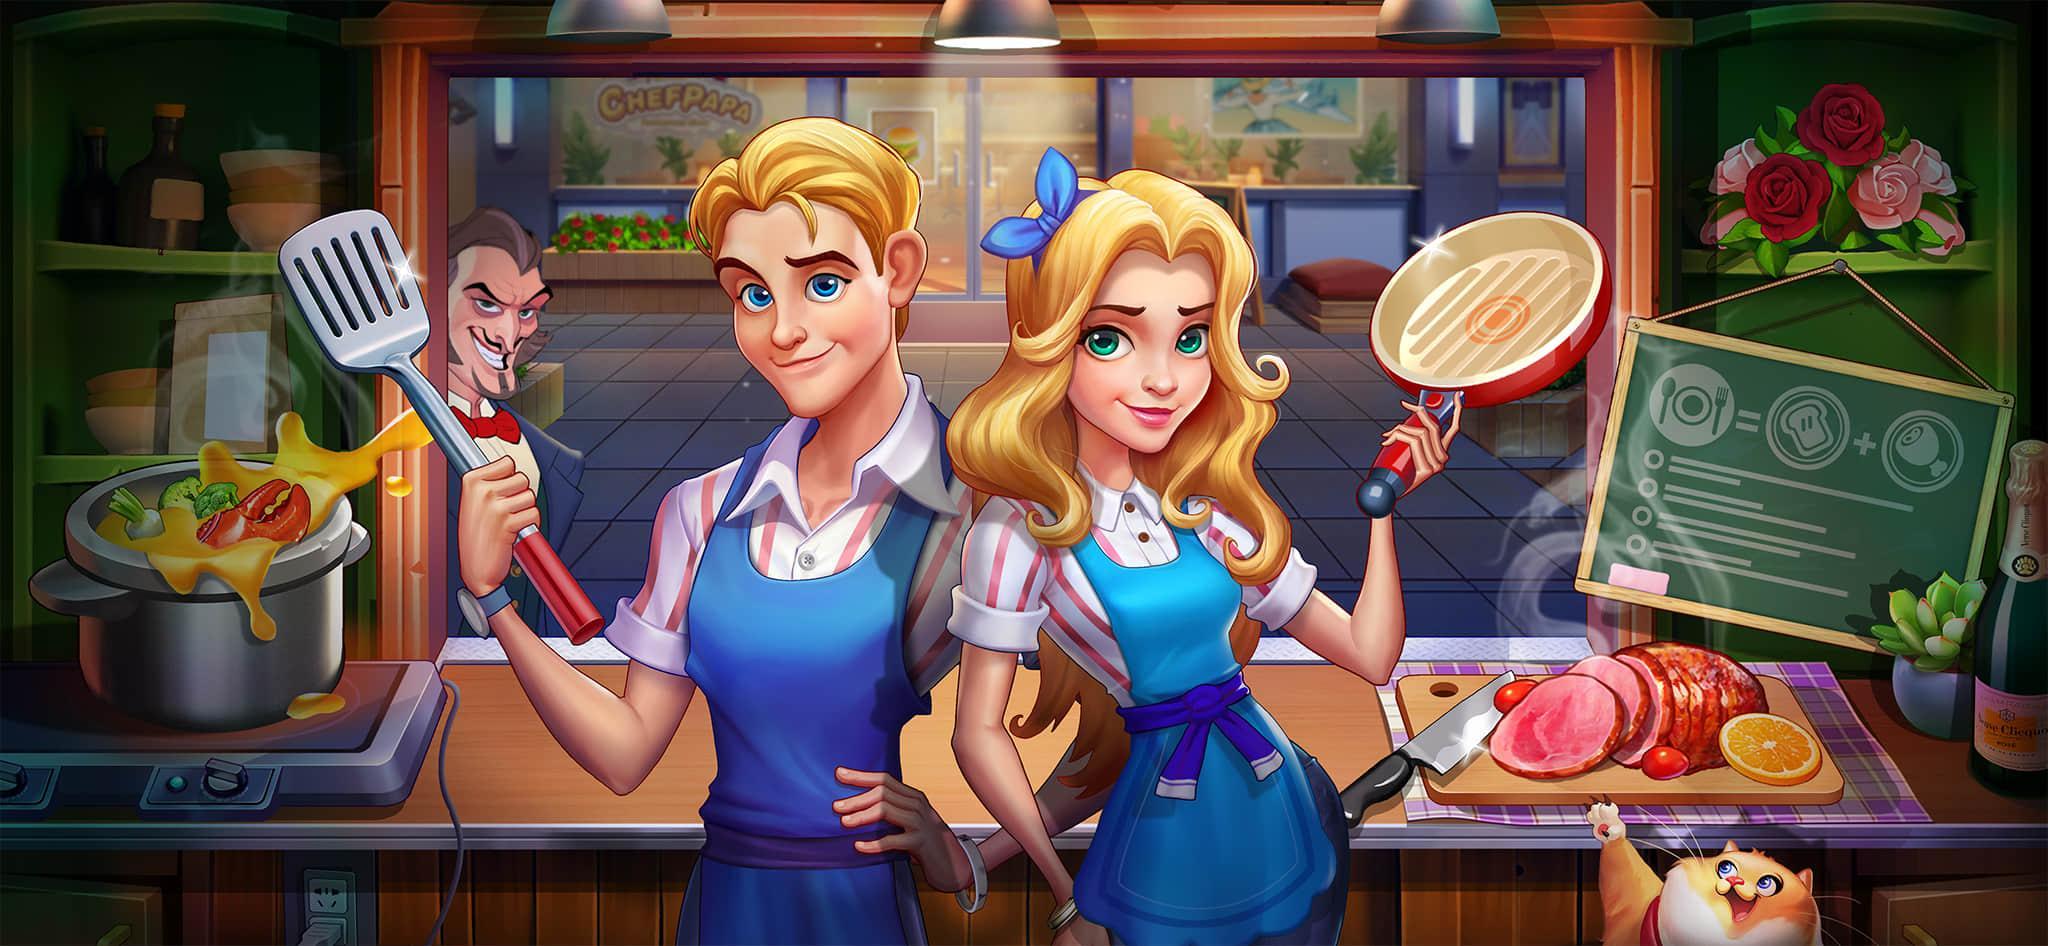 Cooking Restaurant - Fast Kitchen Game Для Андроид - Скачать APK